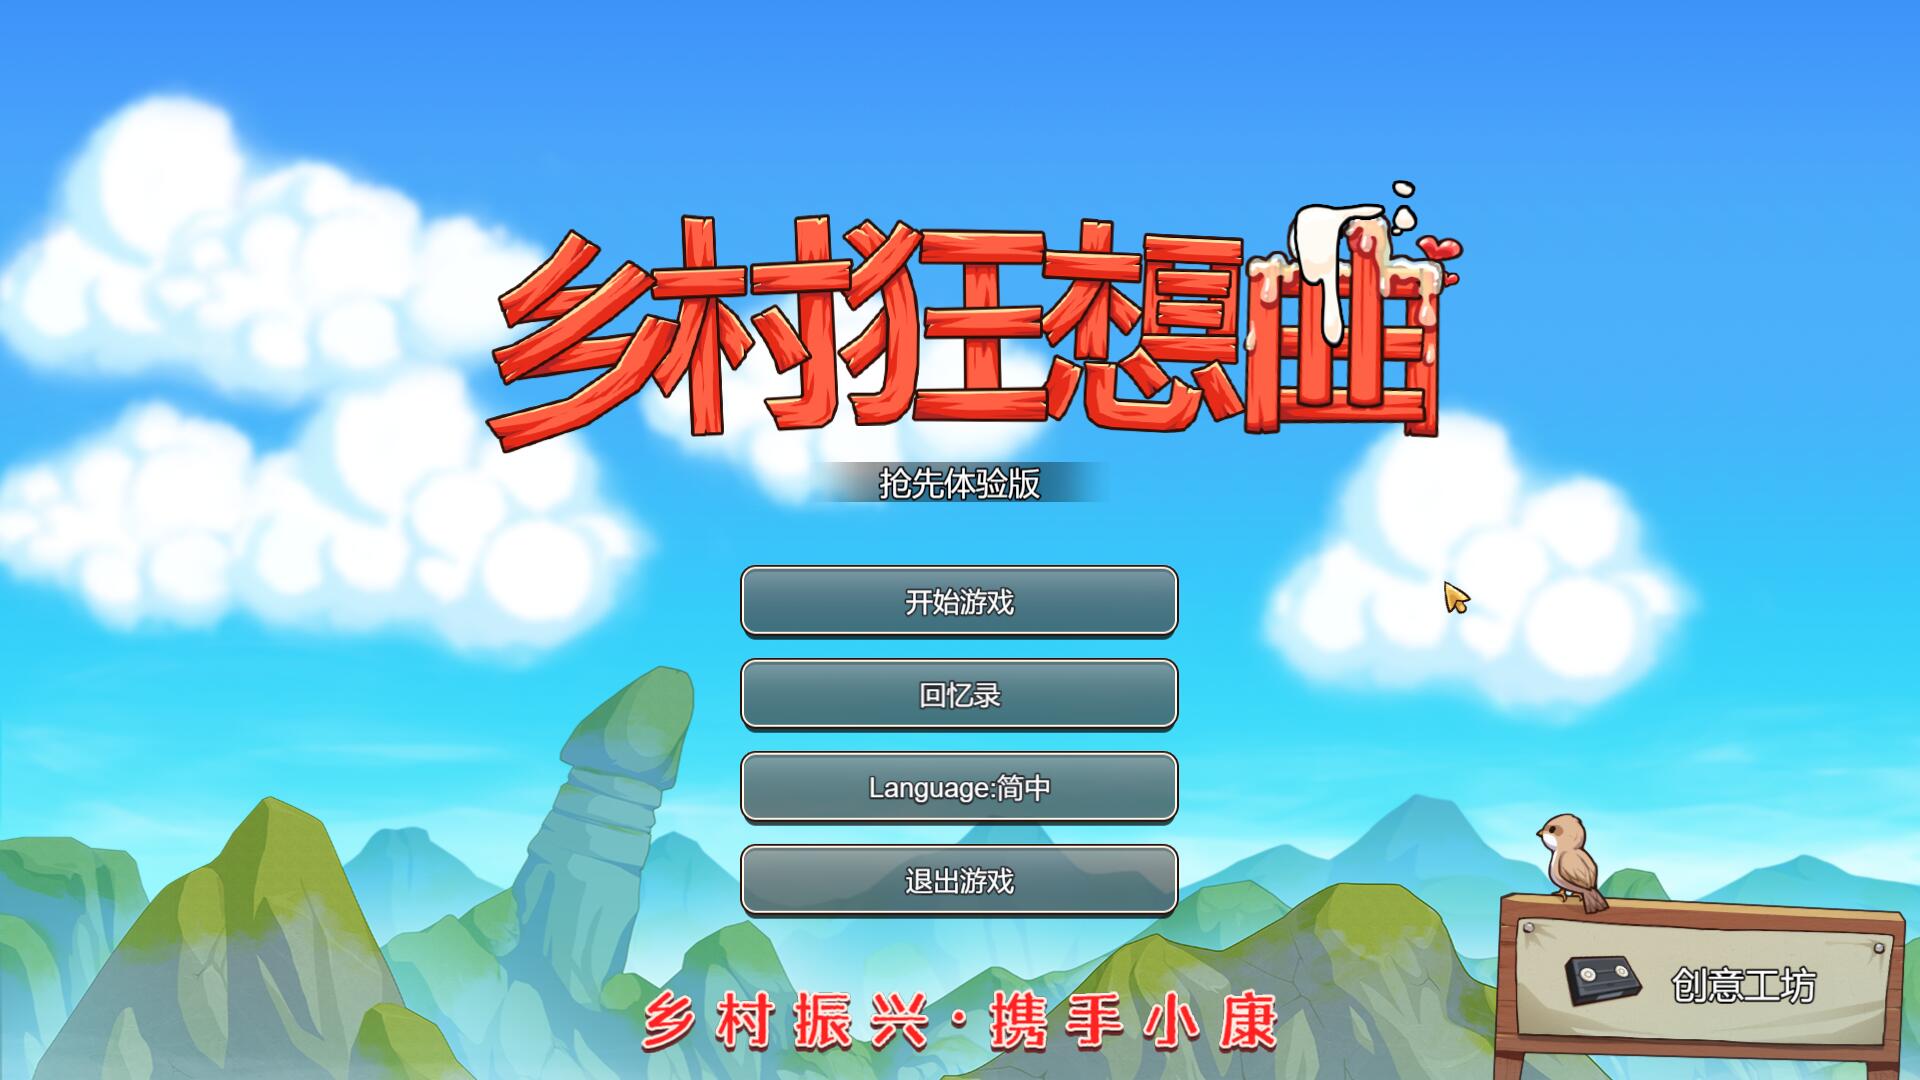 【互动SLG+RPG/中文/全动态】乡村狂想曲 Ver1.60 新温泉地图 官中步兵版【1.3G/更新】-游戏论